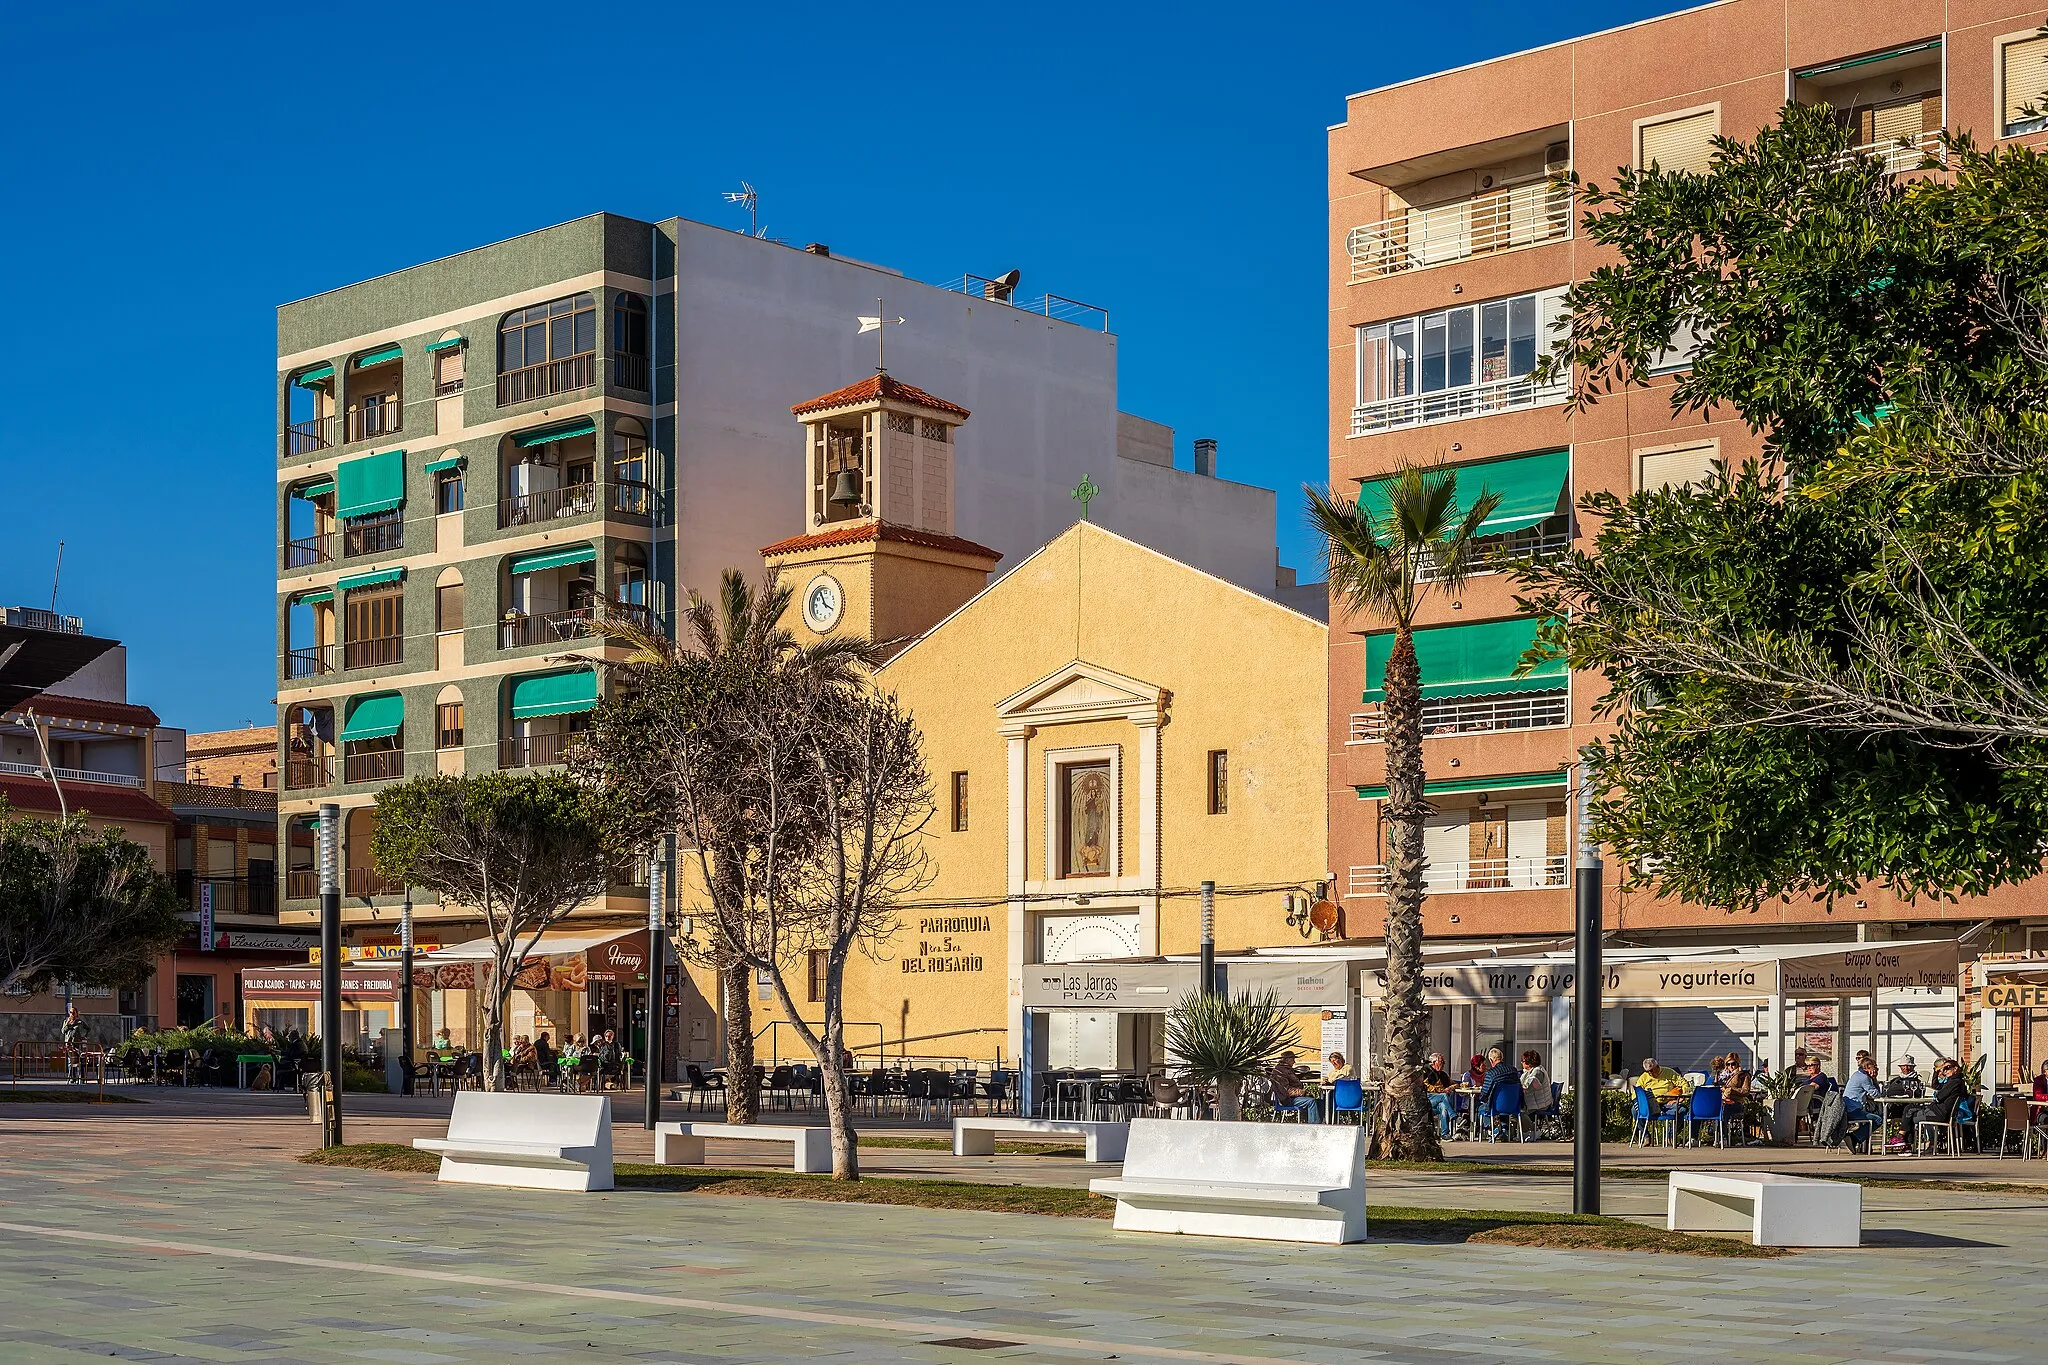 Photo showing: Plaza Encarnación de Puchol in La Mata, Torrevieja, Alicante, Spain in 2022 January. The church in the background is Parroquia Nuestra Señora del Rosario.